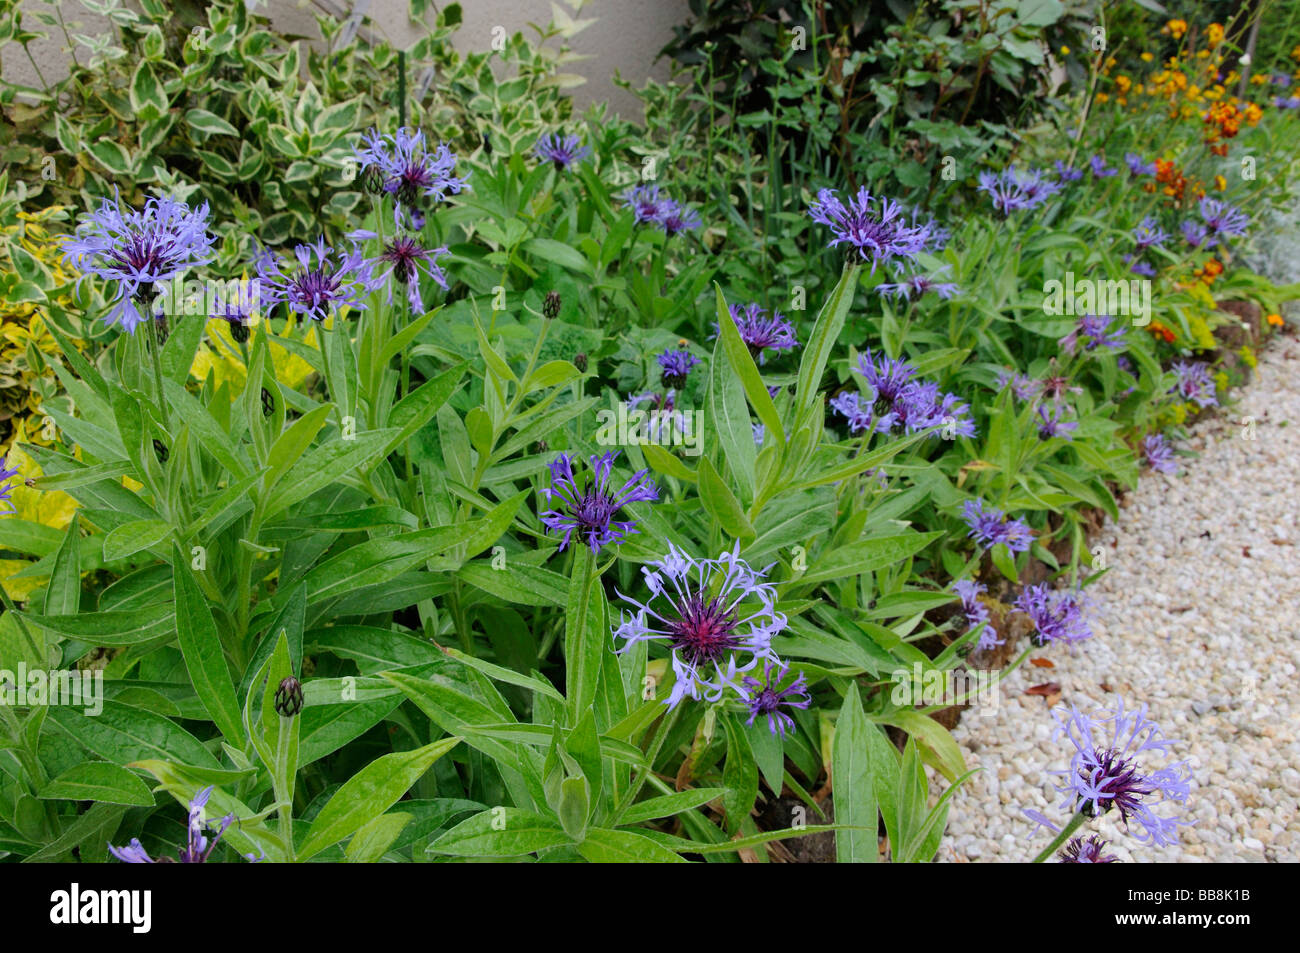 Centaurea montana growing in a garden border, France Stock Photo